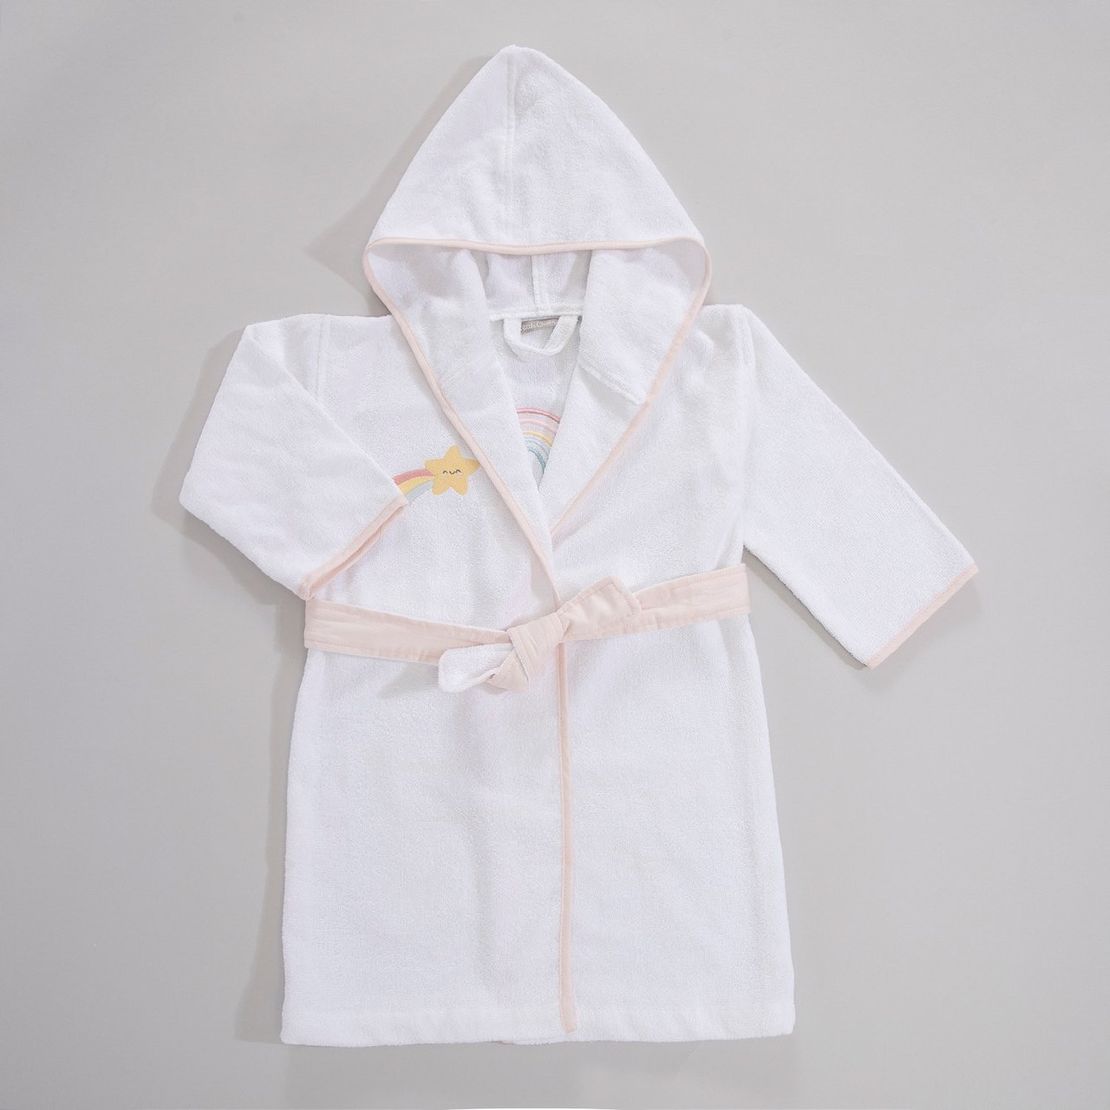 Детский махровый халат Rainbow, для девочки с аппликацией Радуга единорога 7-8 лет, белый